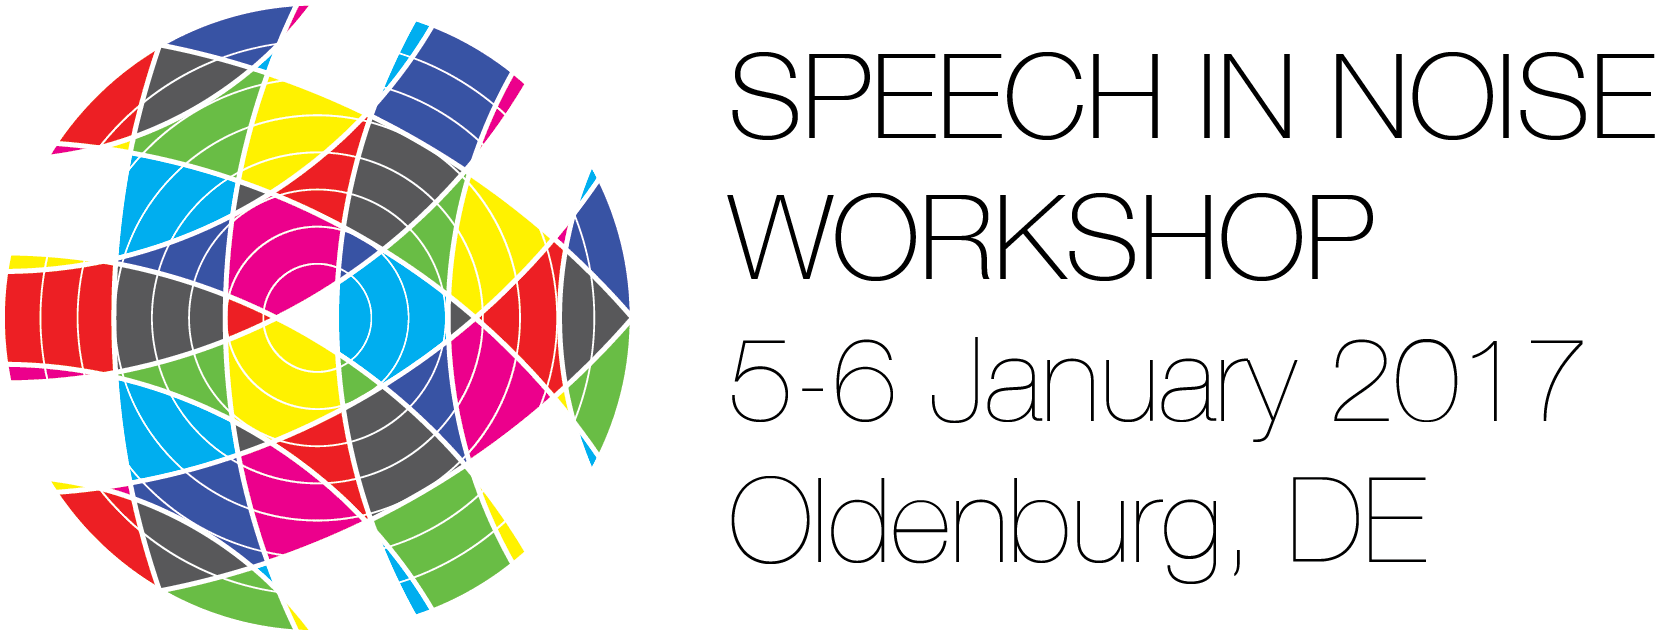 9th Speech in Noise Workshop, 5-6 January 2017, Oldenburg